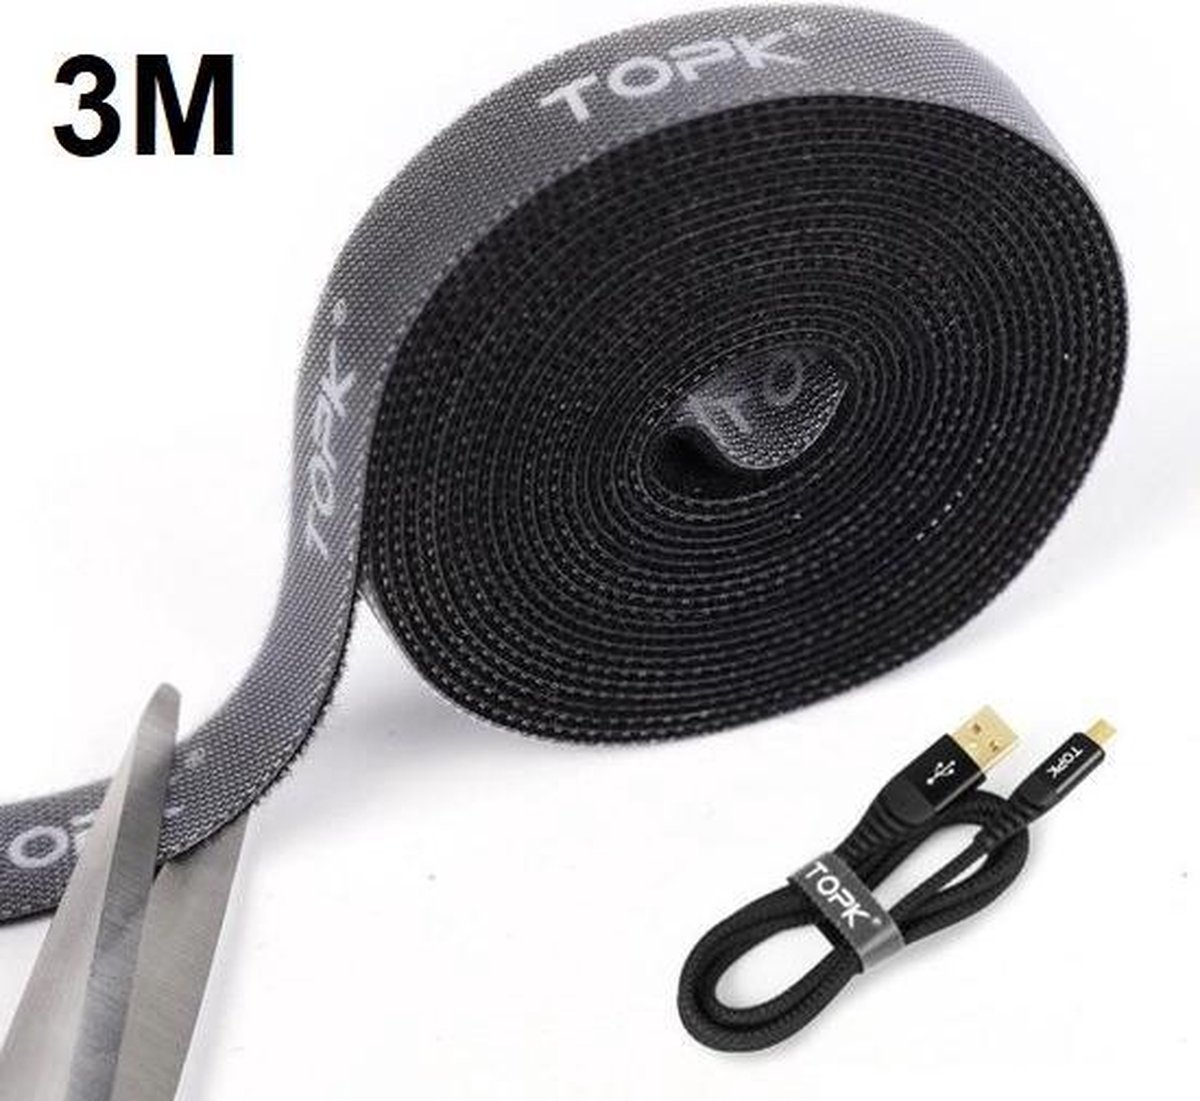 TOPK - kabel organizer- kabel klemmen - 3 meter